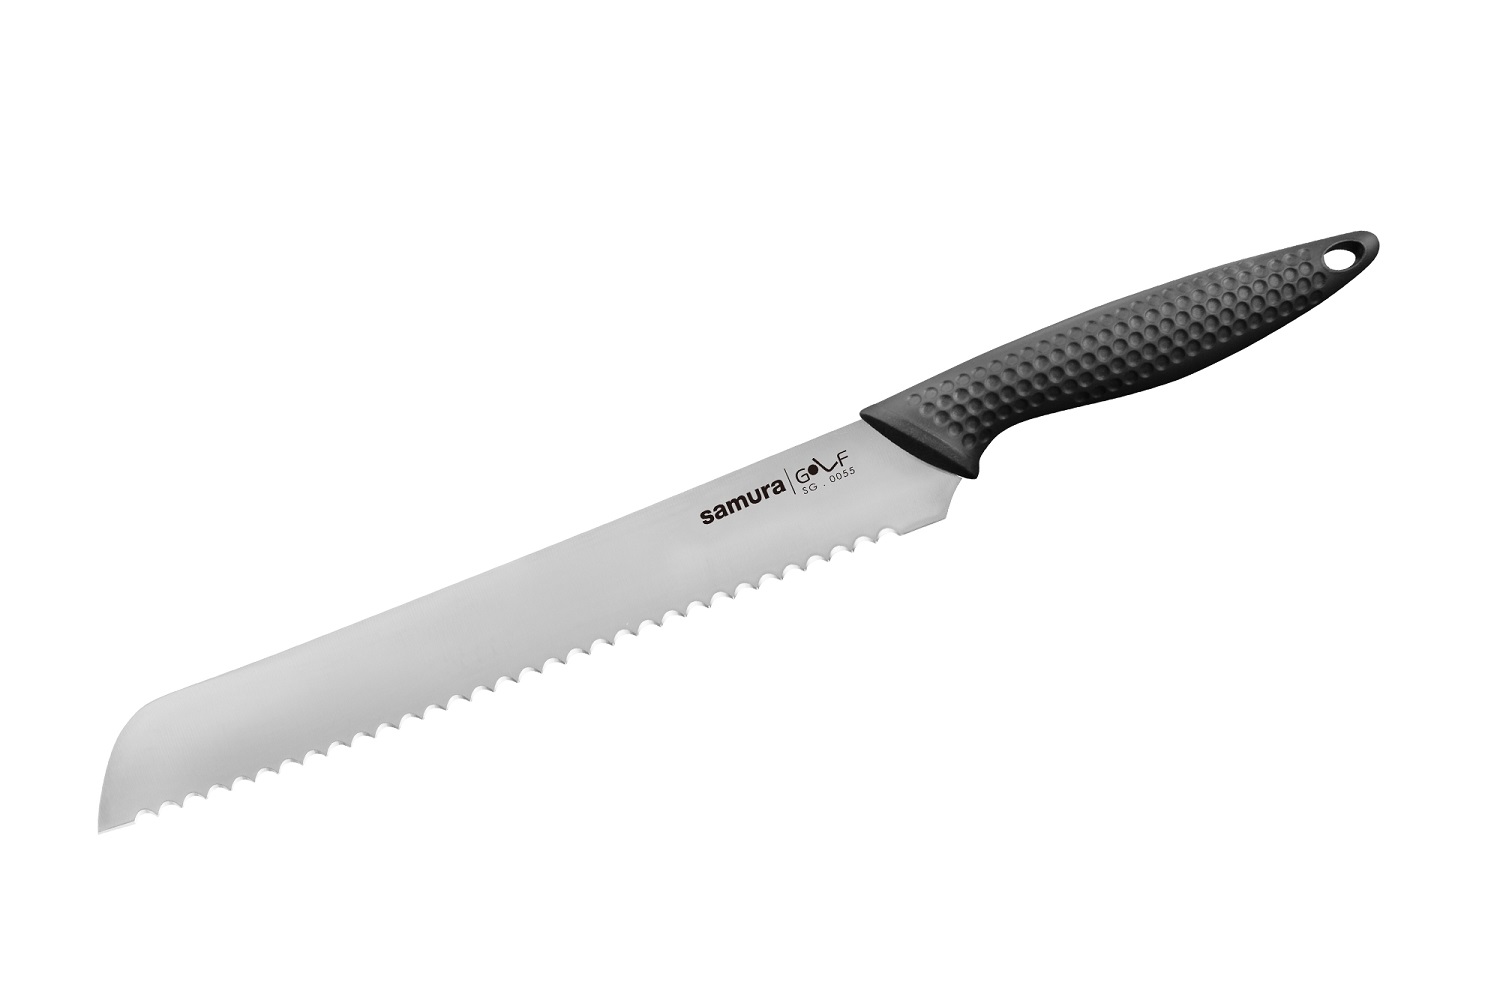 Нож Samura для хлеба Golf, 23 см, AUS-8 нож кухонный гранд шеф golf 24 см sg 0087 k samura